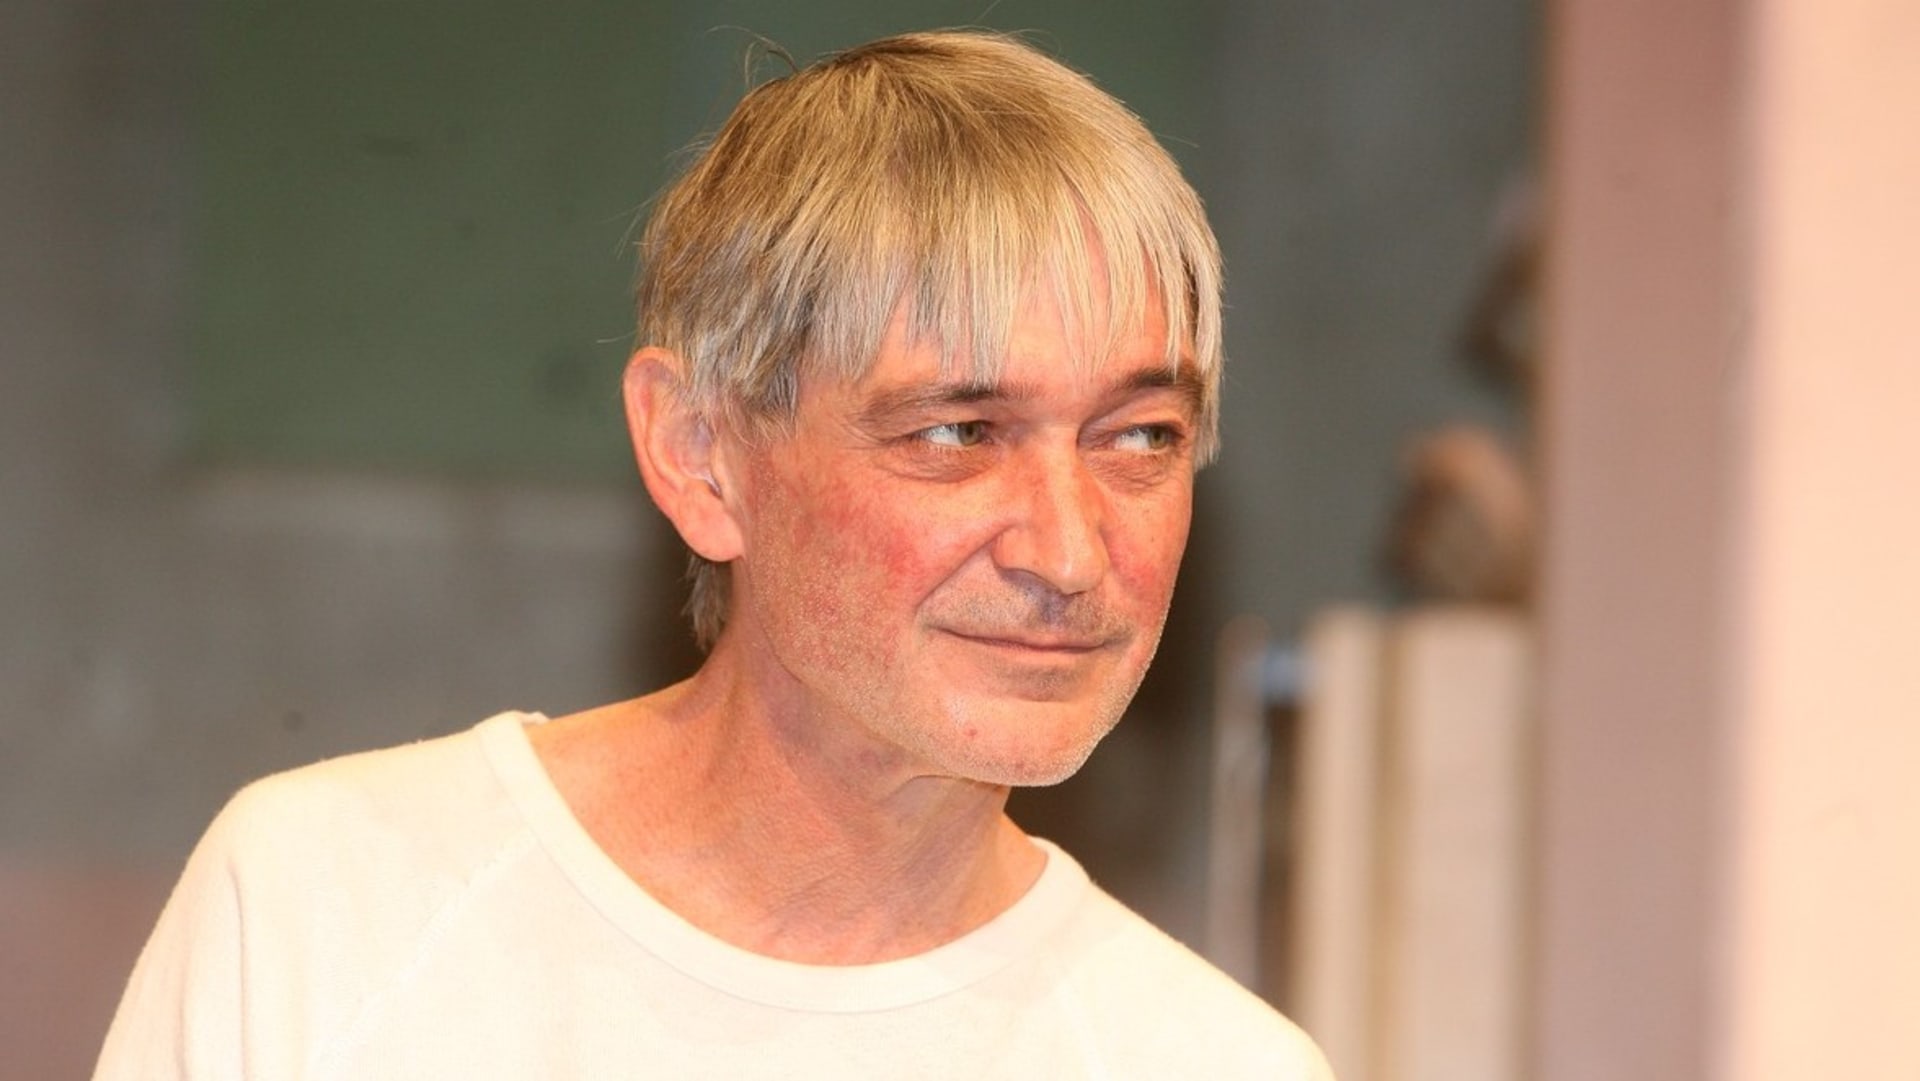 Vladimír Dlouhý by oslavil 65. narozeniny.